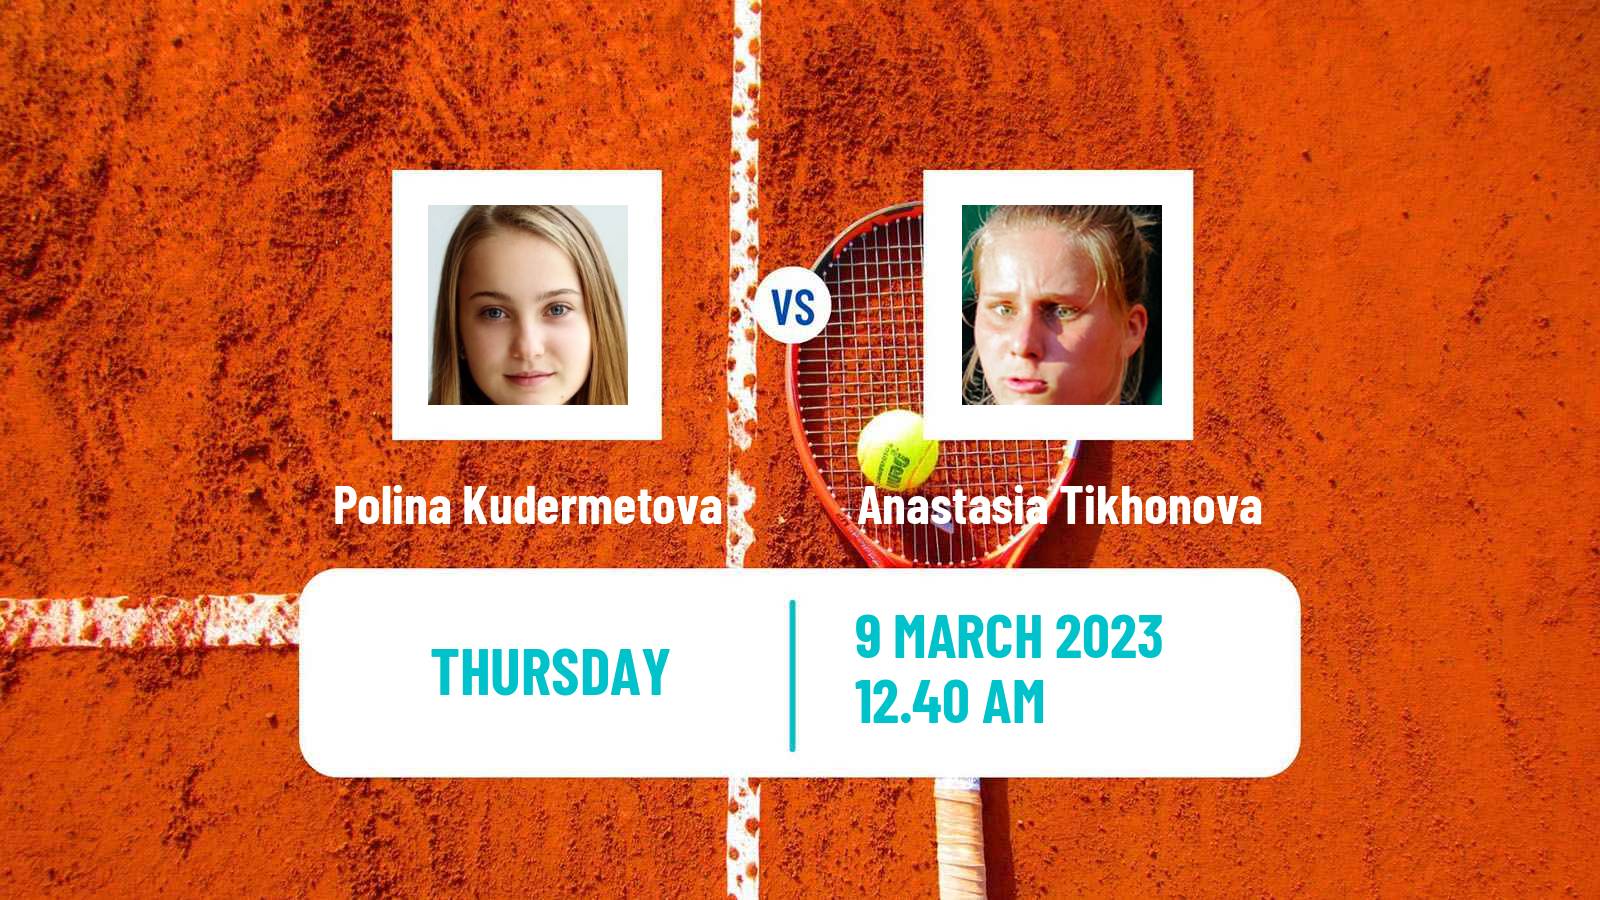 Tennis ITF Tournaments Polina Kudermetova - Anastasia Tikhonova